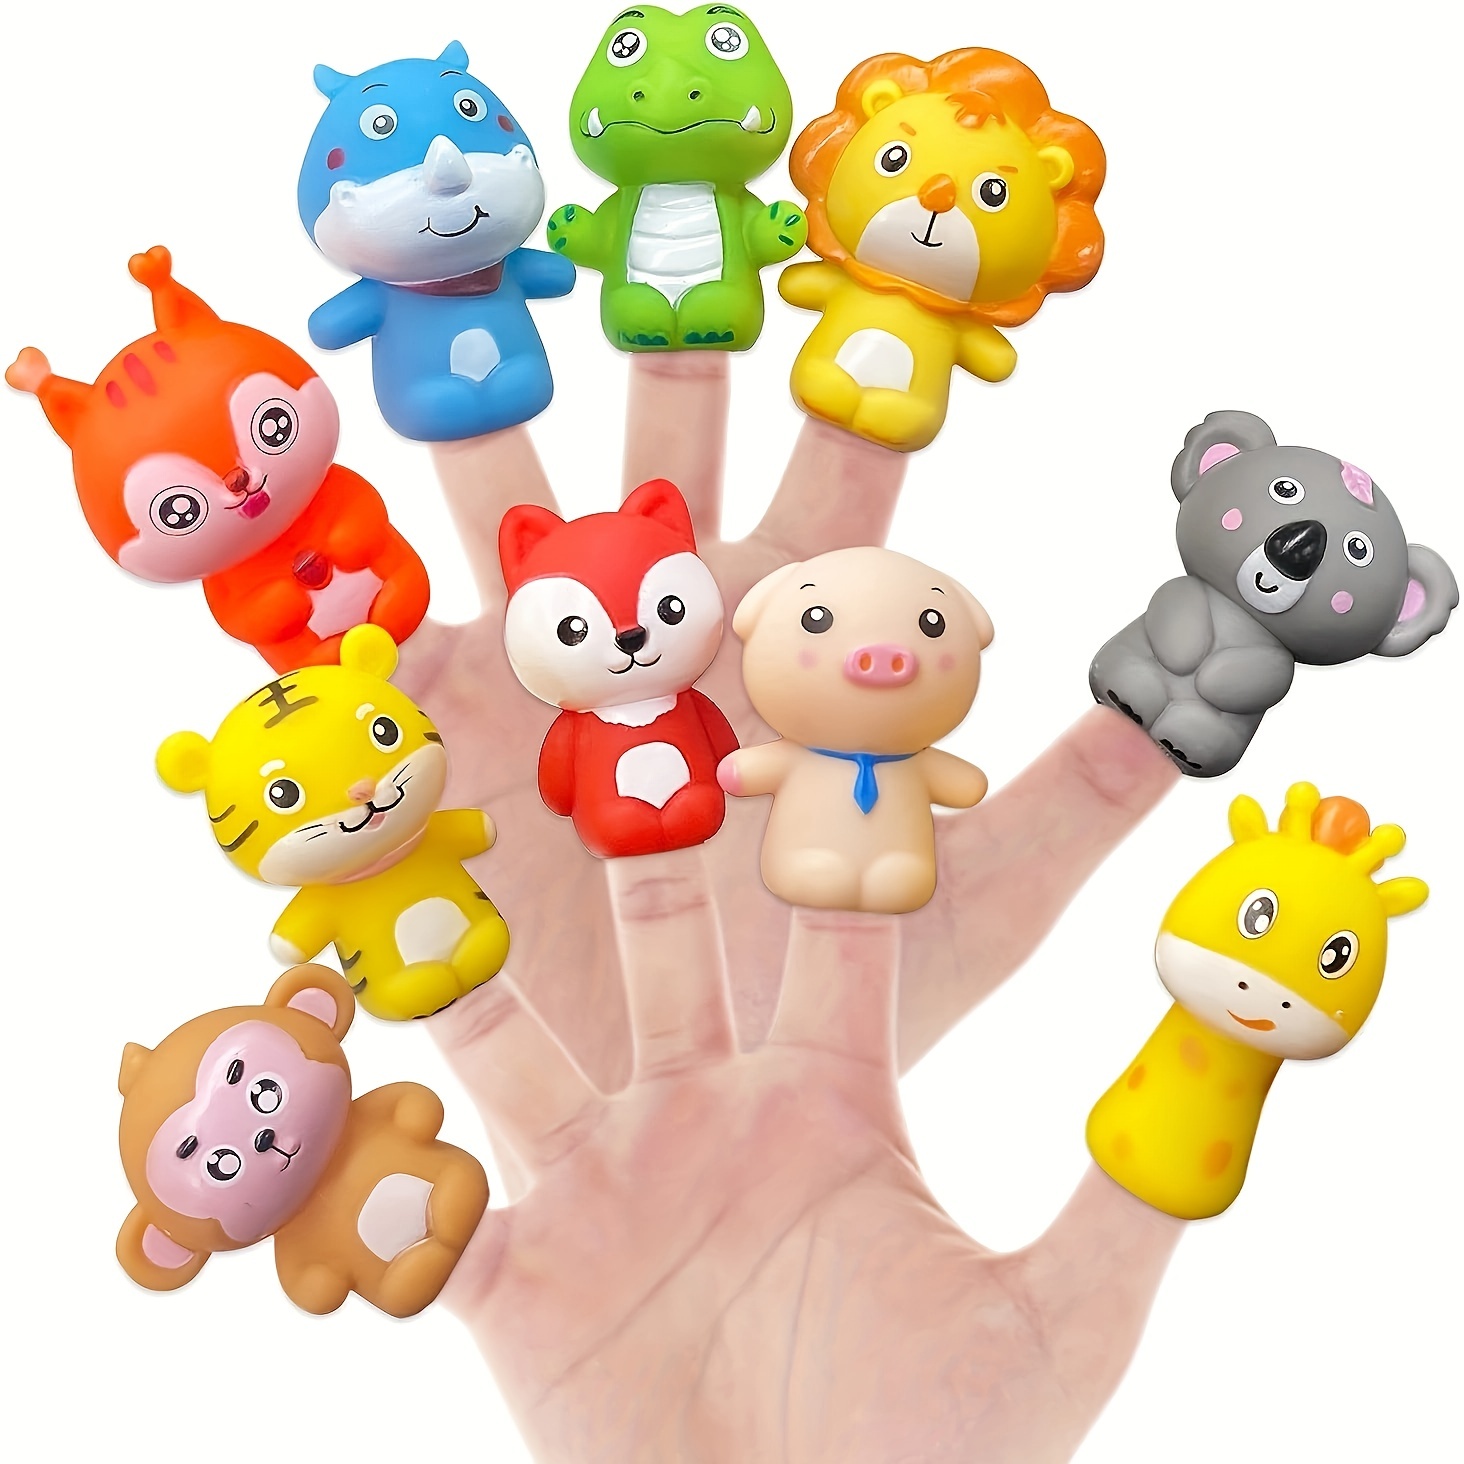 Monstre doigt jouet jouet pour enfant cadeau fête jouet amusant